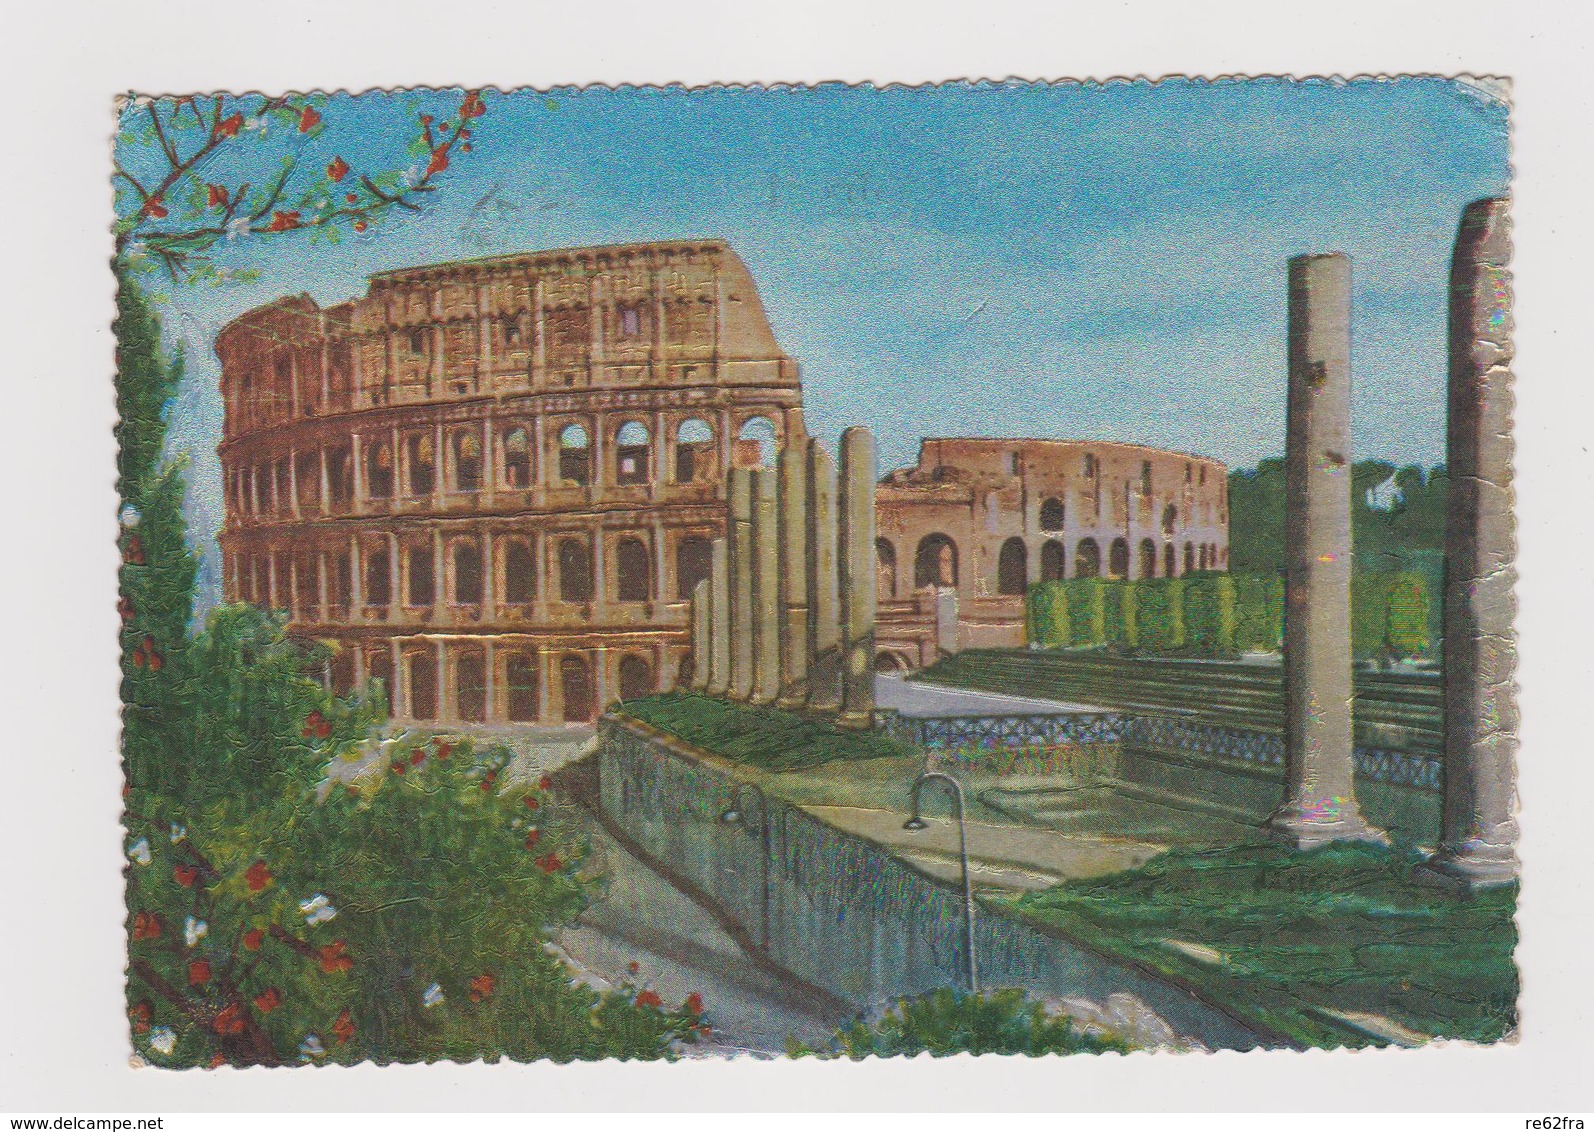 4 cartoline, Roma - F.G. - anni '1930-1950